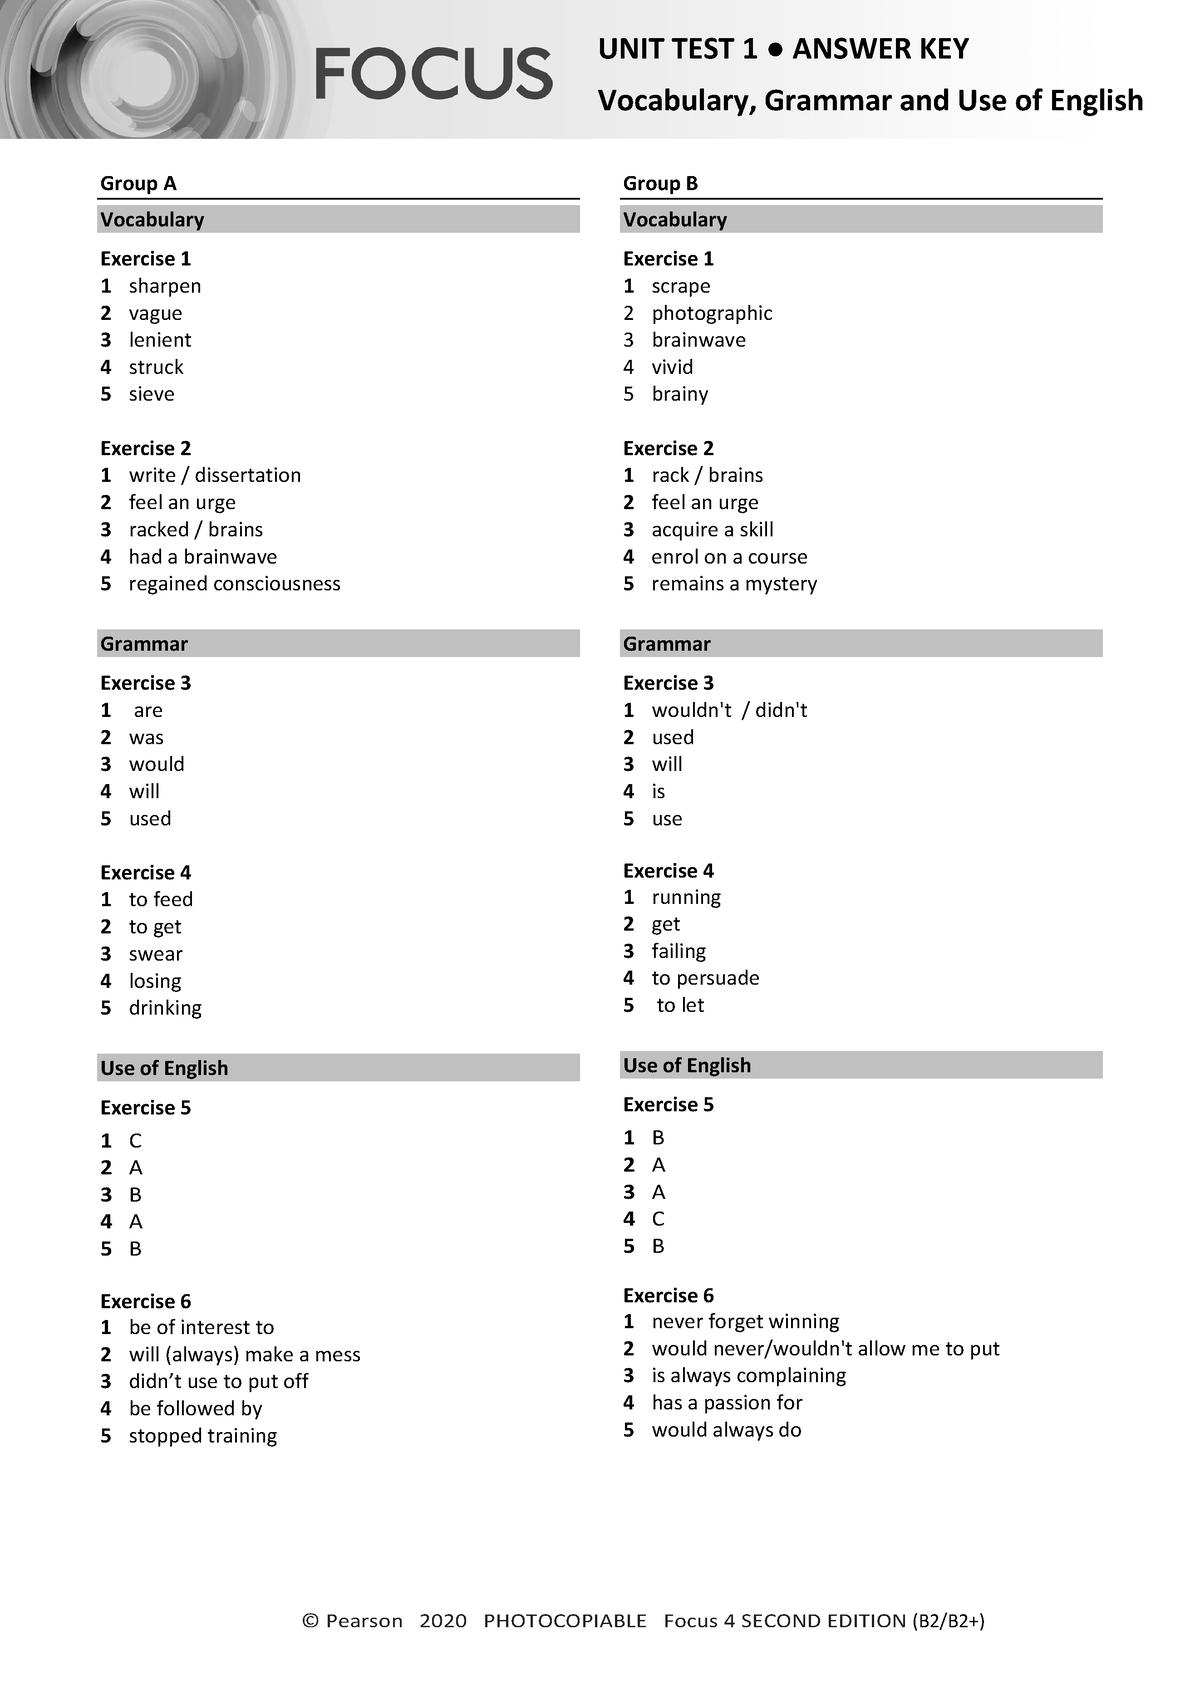 focus-4-2e-unit-test-vocabulary-grammar-uo-e-unit1-group-a-b-answers